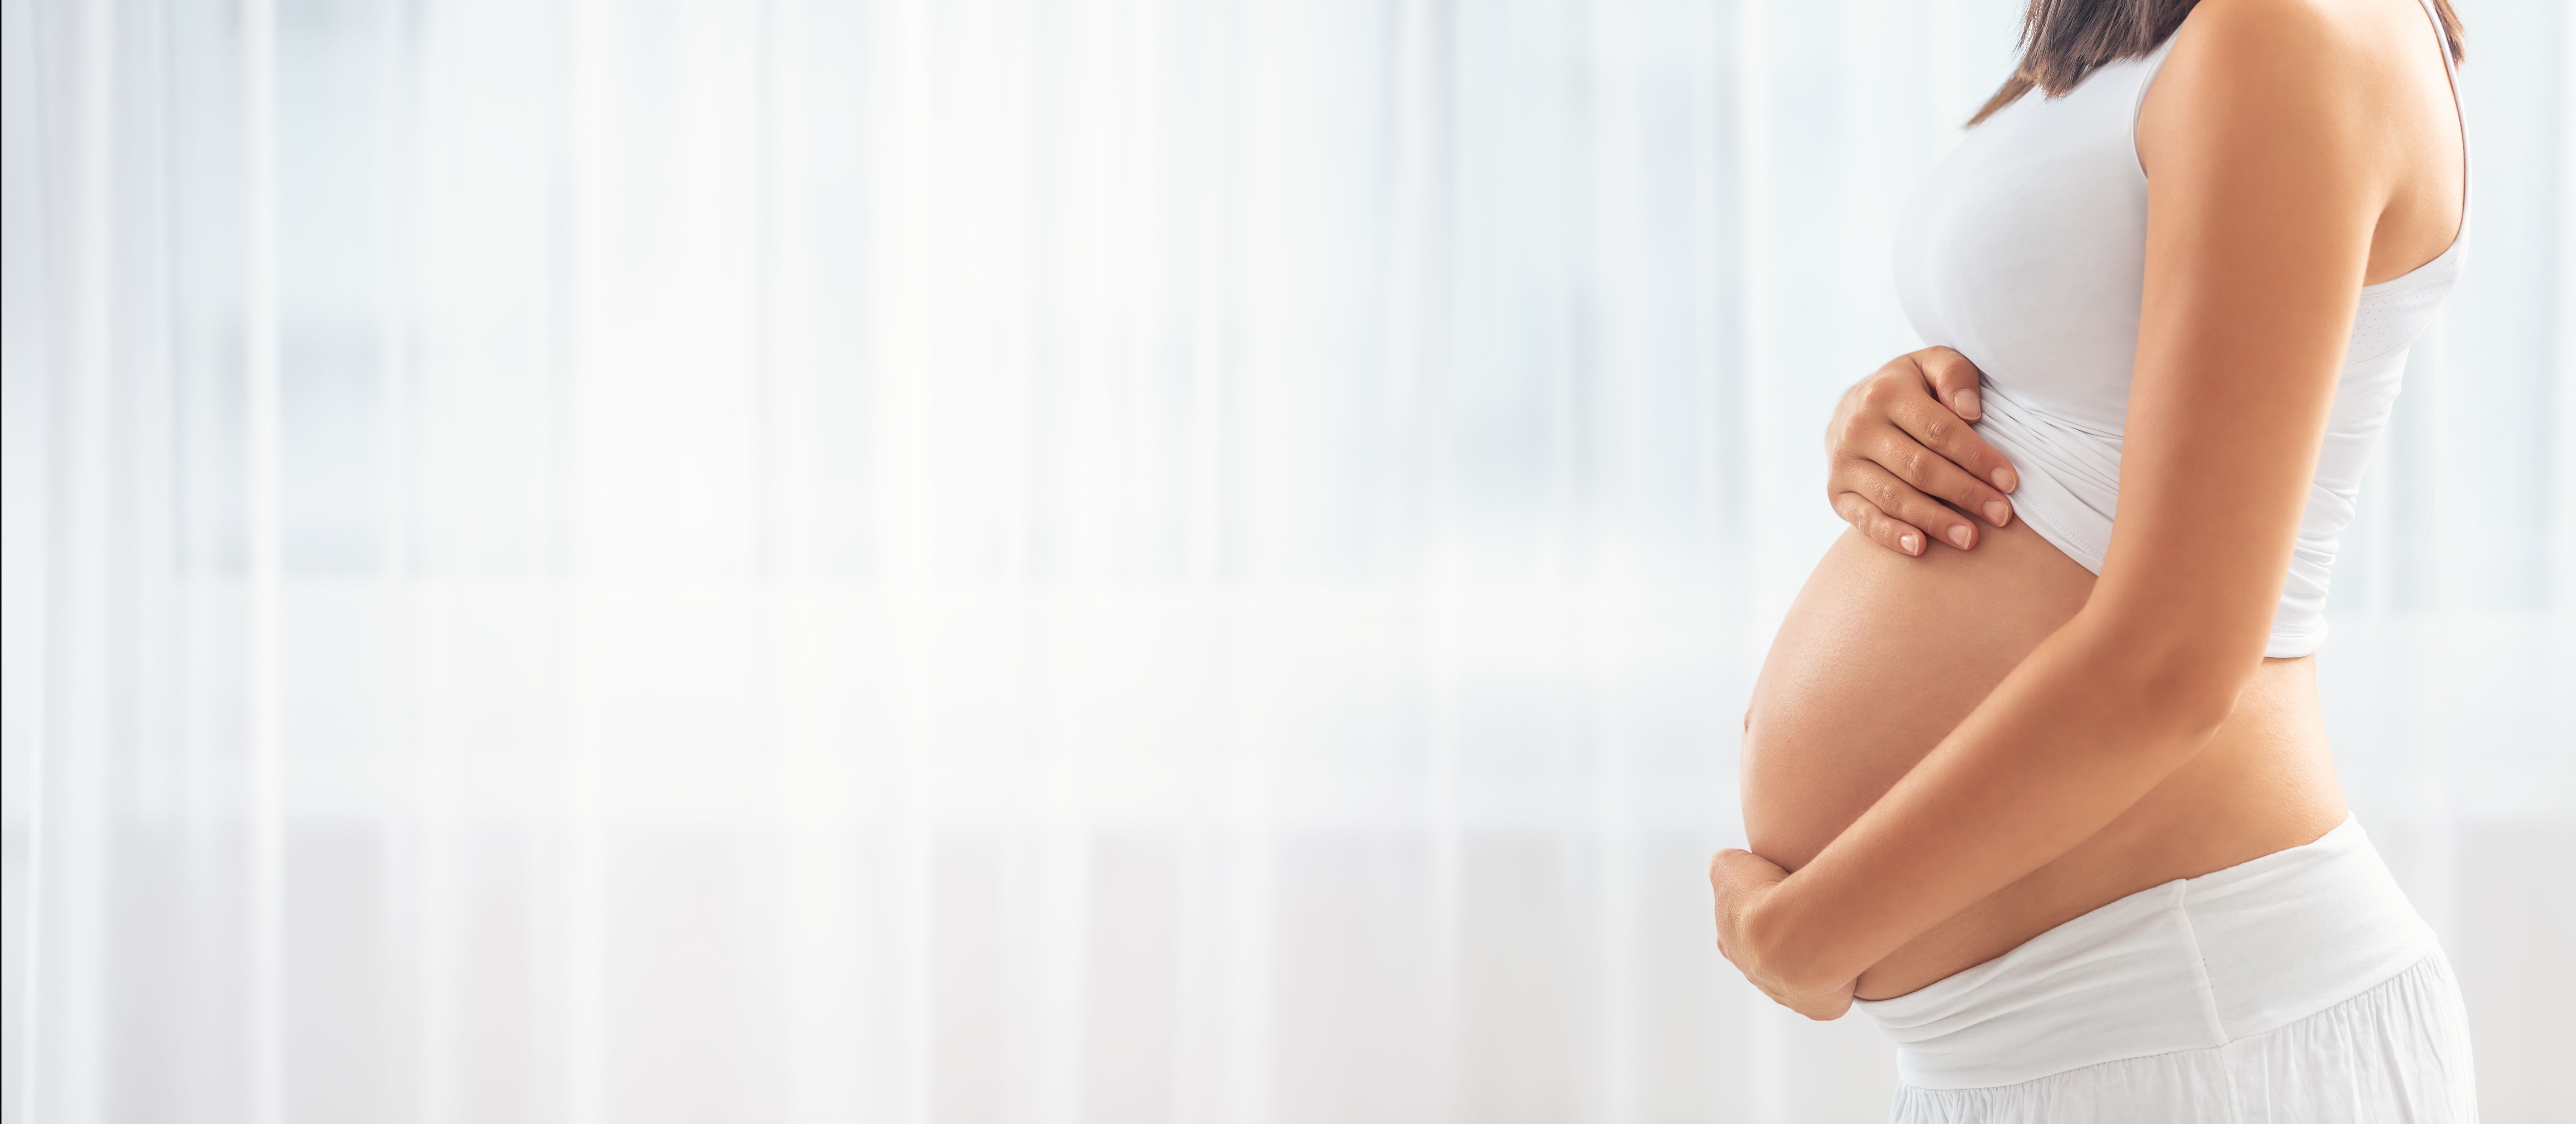 Managing Postpregnancy Hormonal Skin Issues in Breastfeeding Women